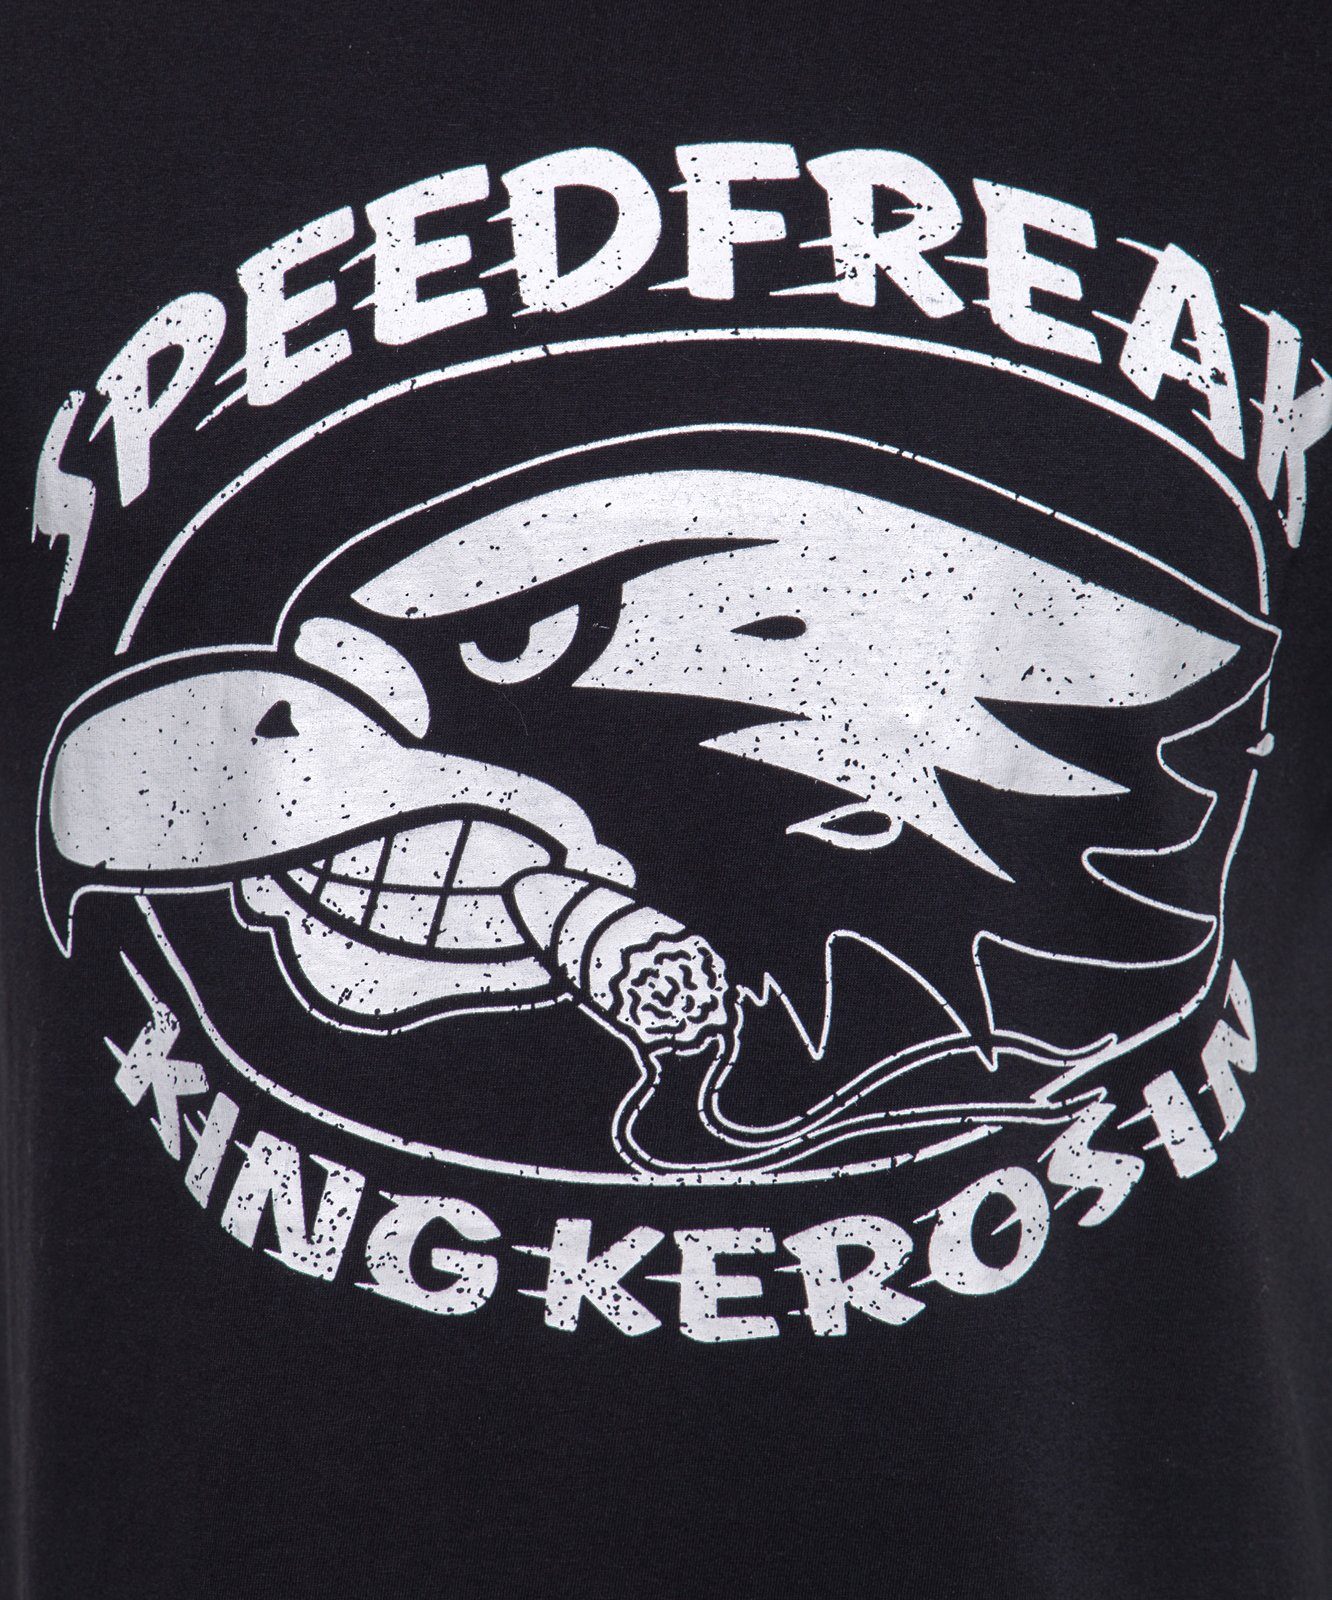 Speedfreak T-Shirt Moon-Waschung KingKerosin mit